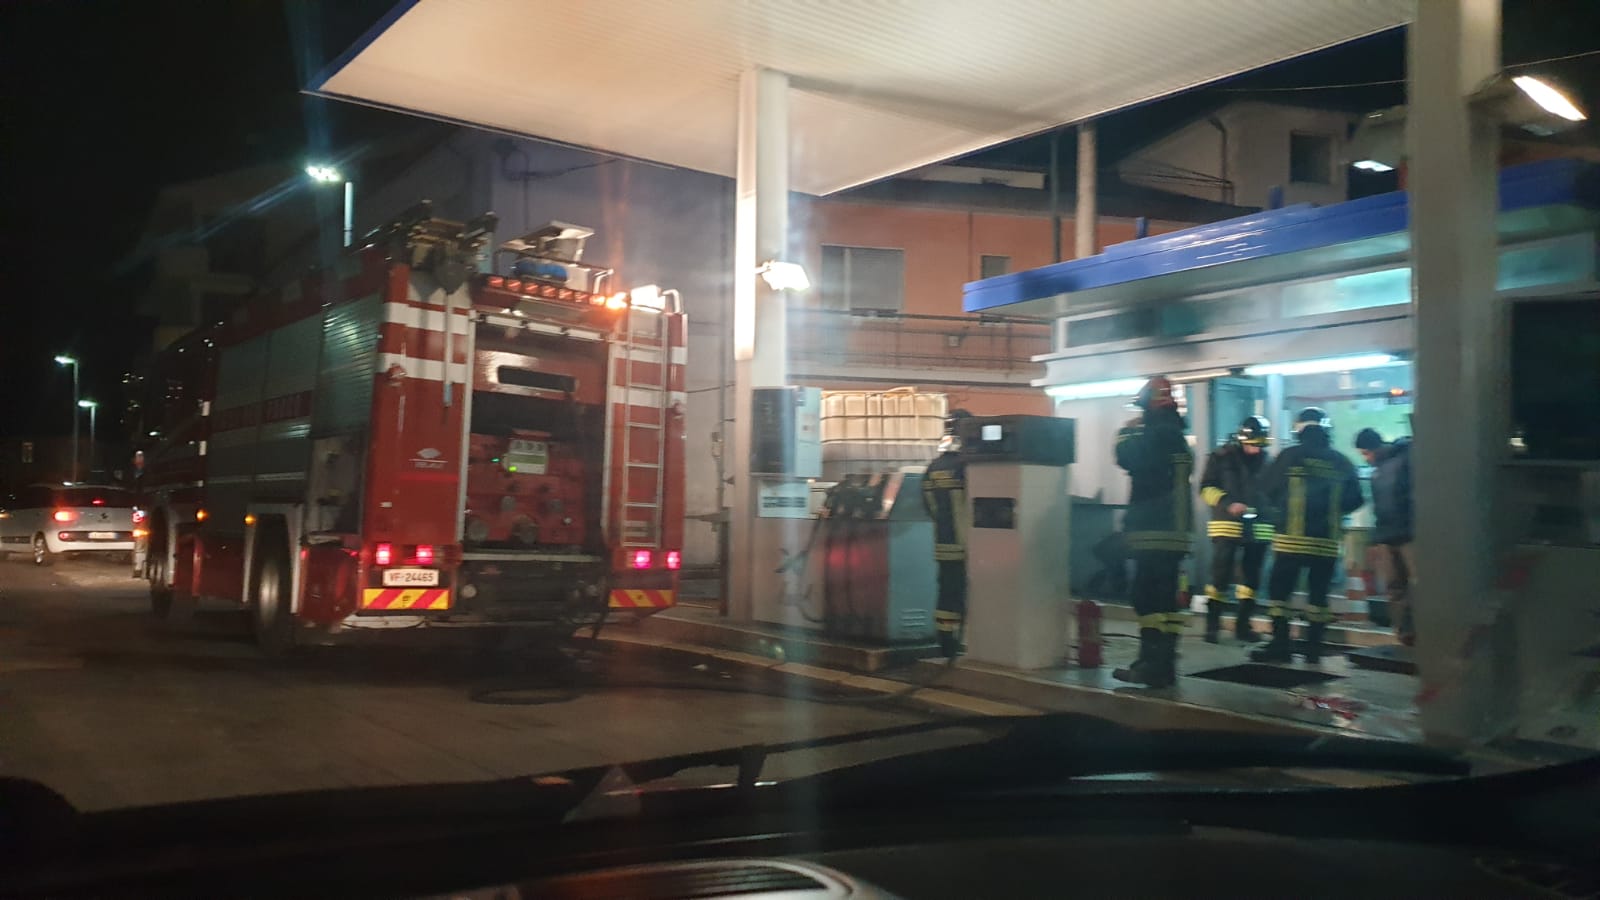 Allarme esalazioni a Piazza Cavour, intervengono i Vigili del Fuoco per una perdita dall'impianto del distributore di benzina